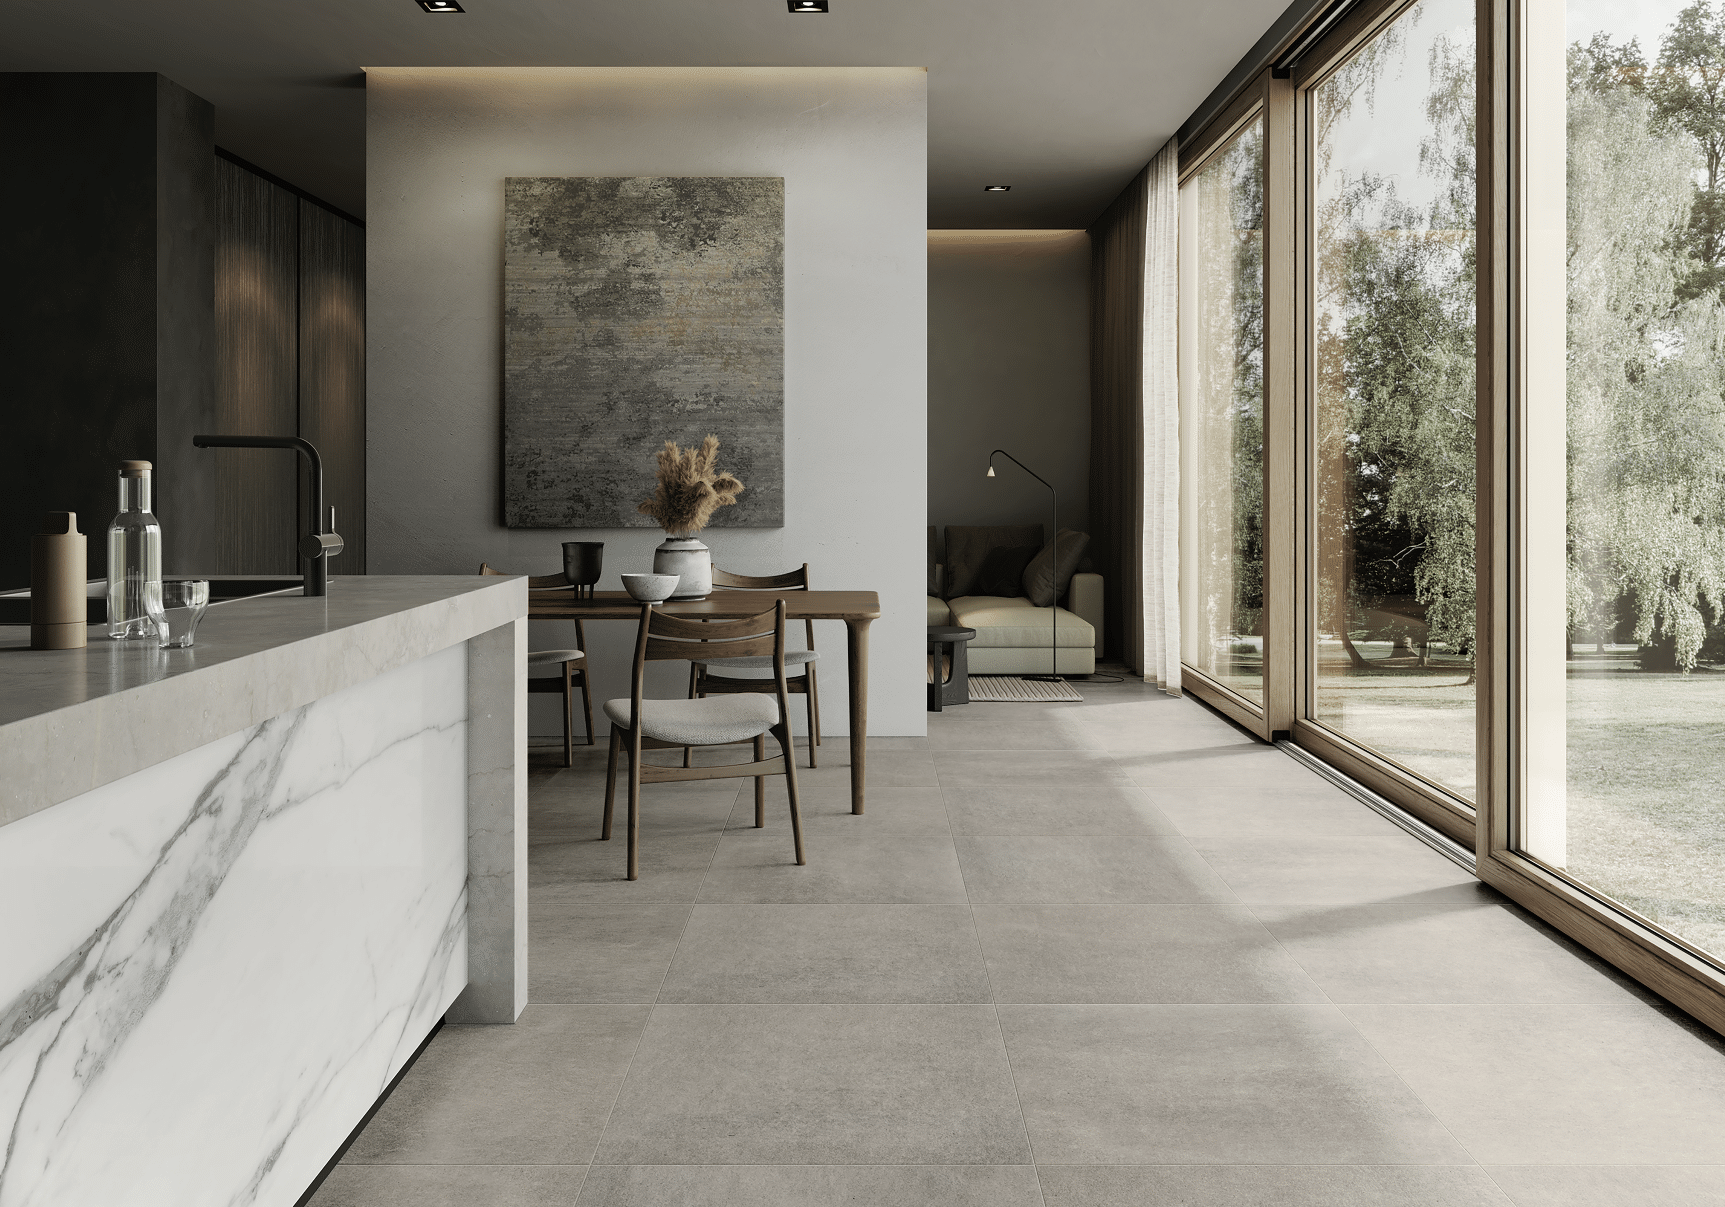 Fliesendorf präsentiert die XXL-Fliesen in Steinoptik am Boden einer offenen Küche mit Keramikküche in Marmoroptik und langer Glasfront.